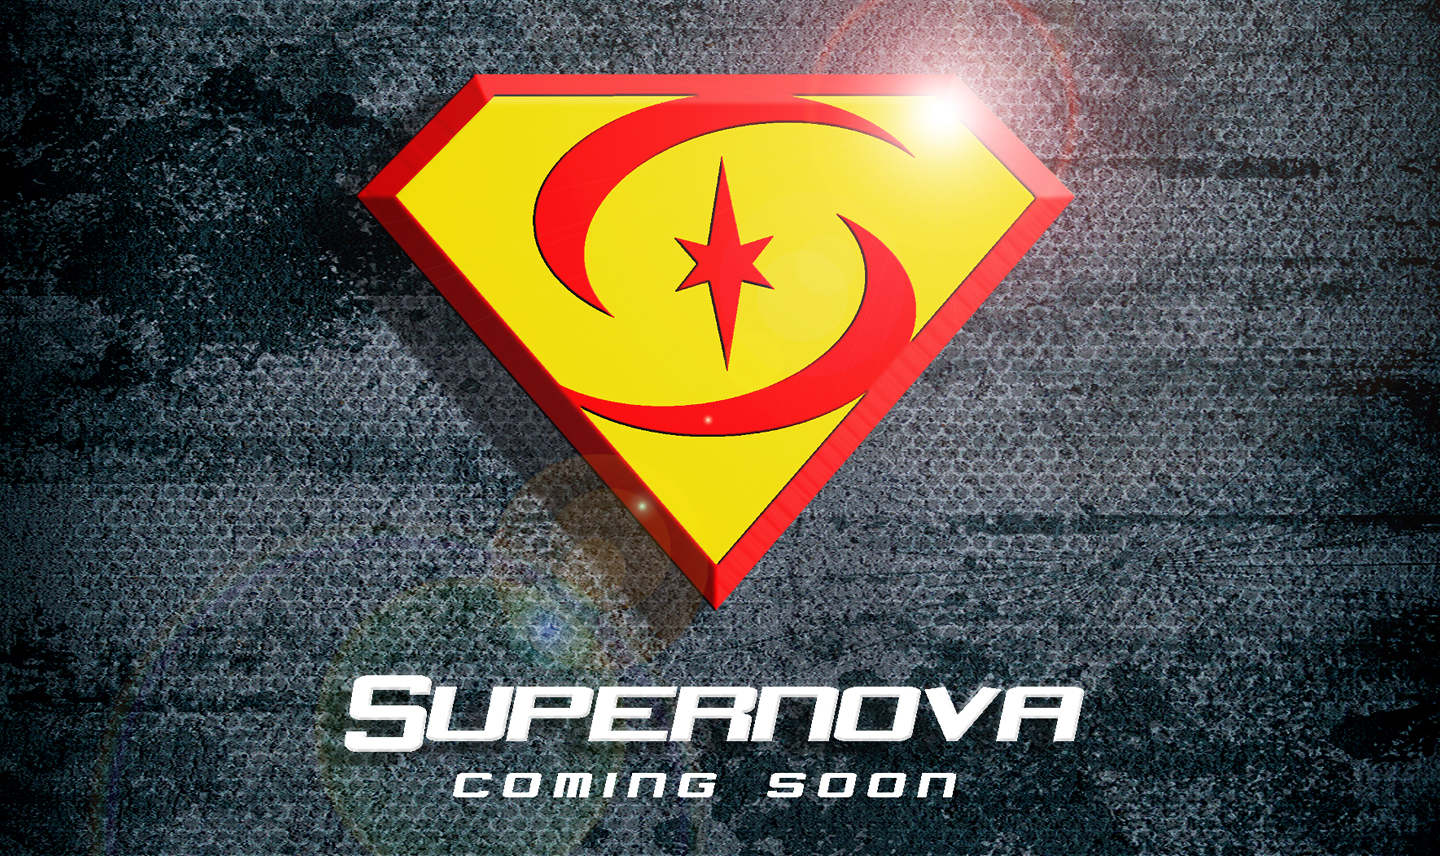 Supernova teaser poster 5.jpg